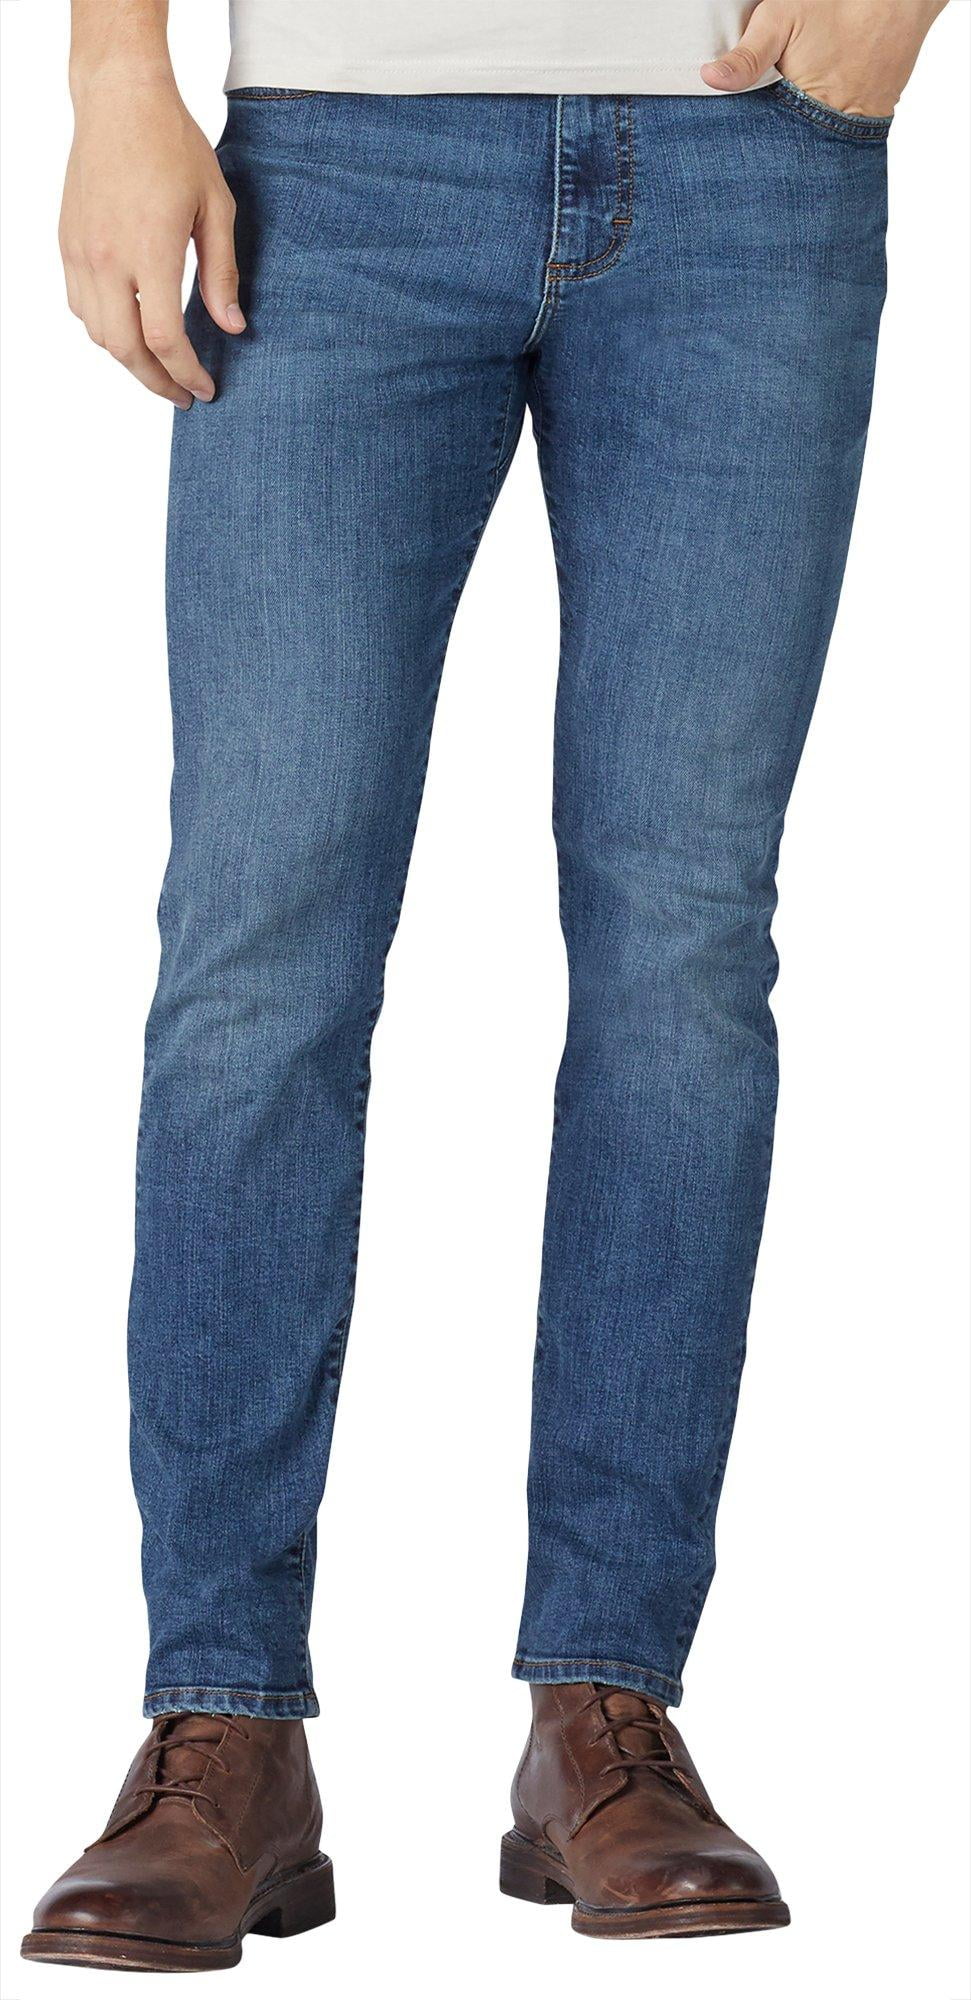 Lee Mens Extreme Comfort Skinny Fit Denim Jeans - Walmart.com